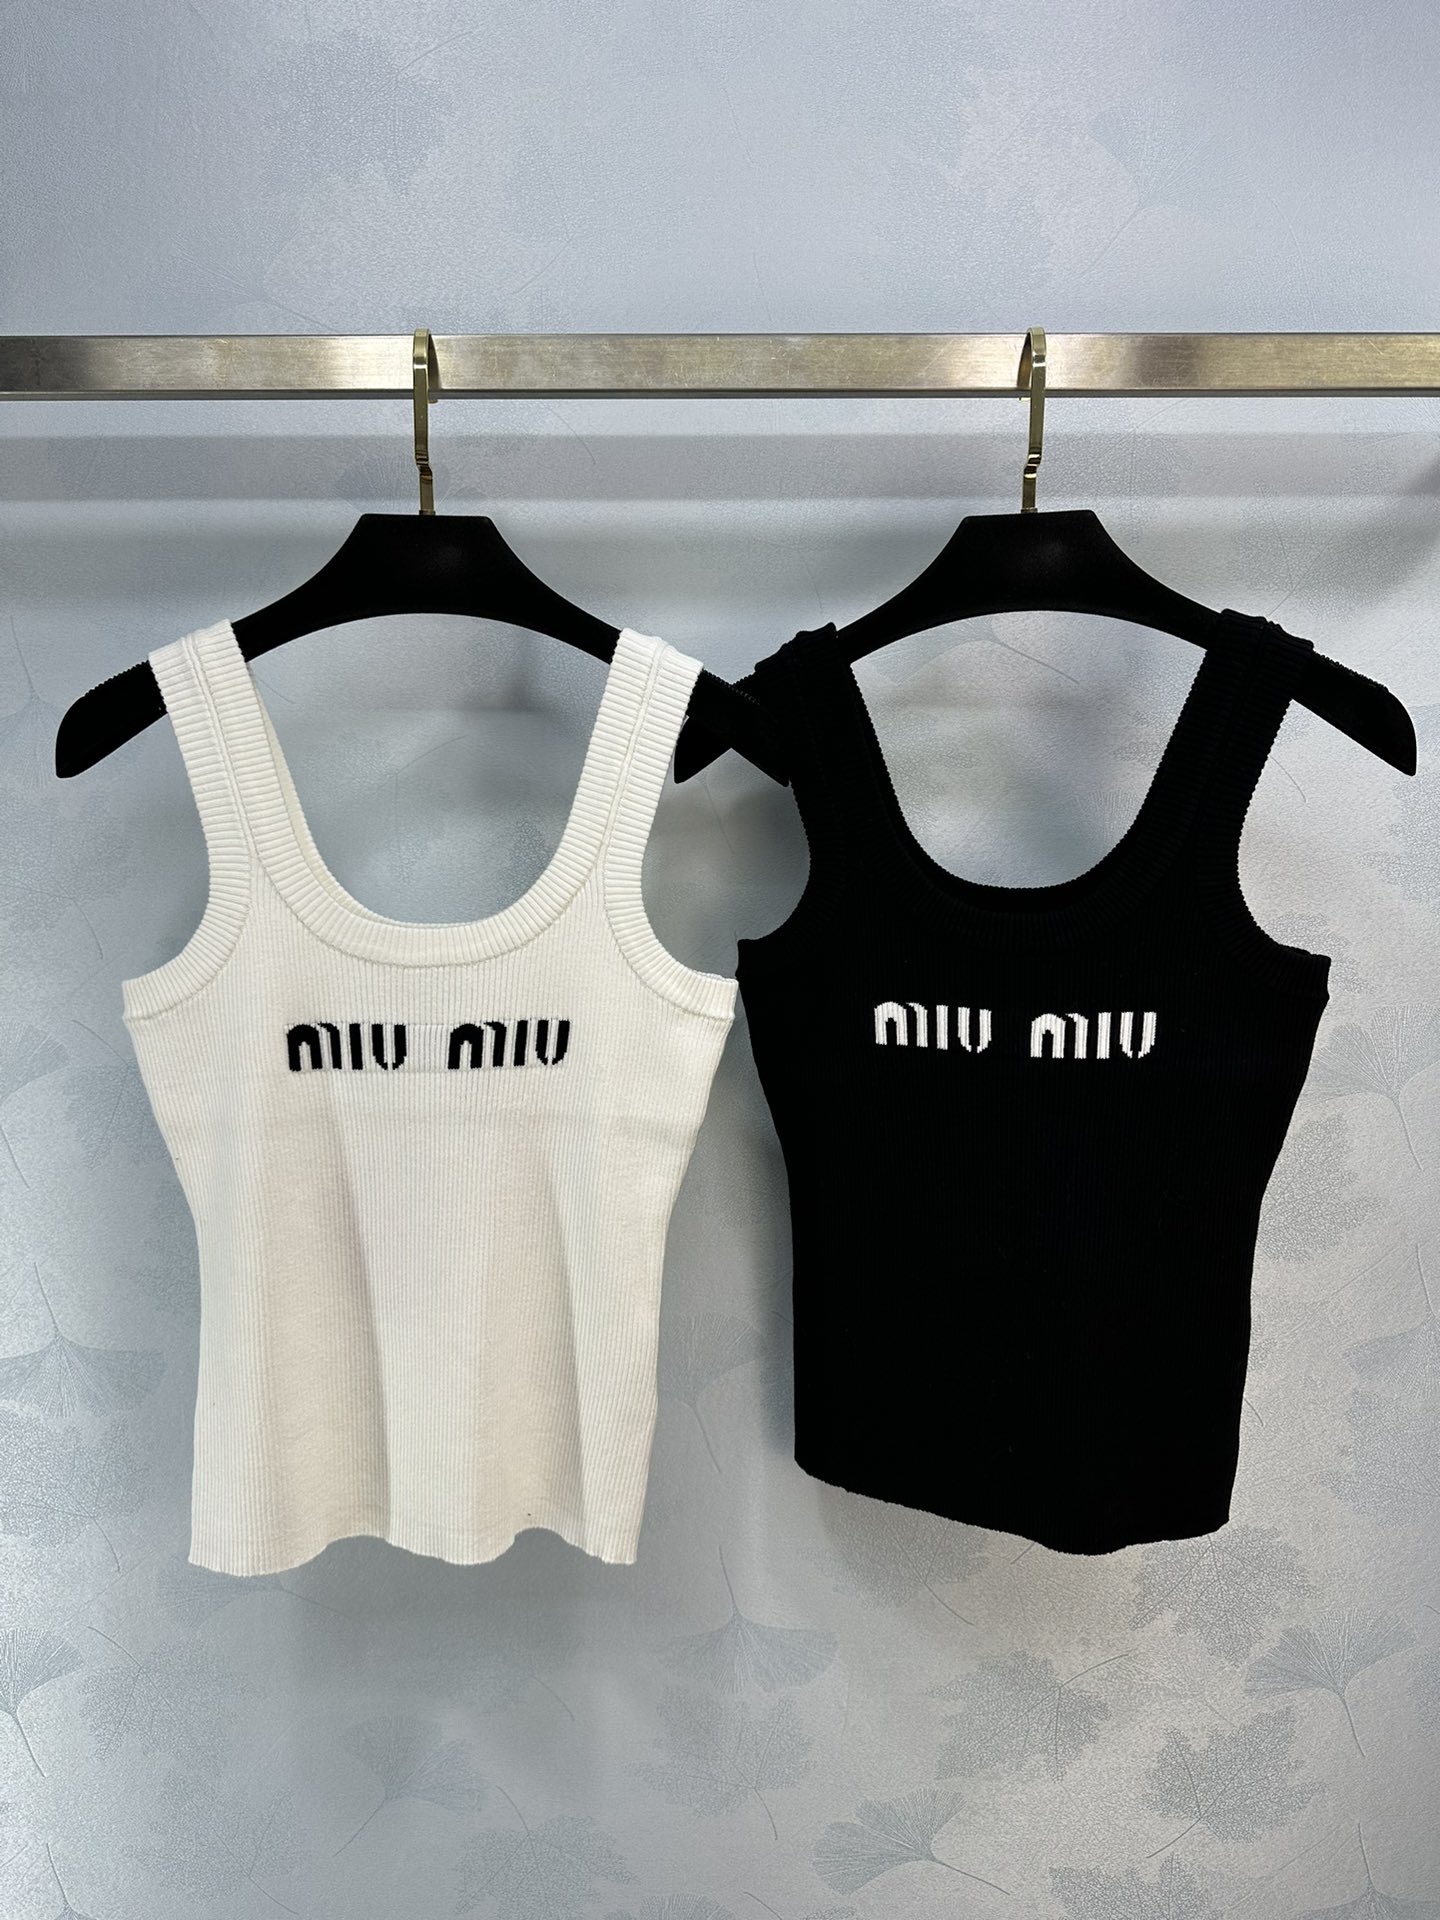 可换尺码！ miumi*夏季新款针织上衣极简黑白搭配Logo元素减龄又活力，凸显甜美感2色3码SML。yjdle